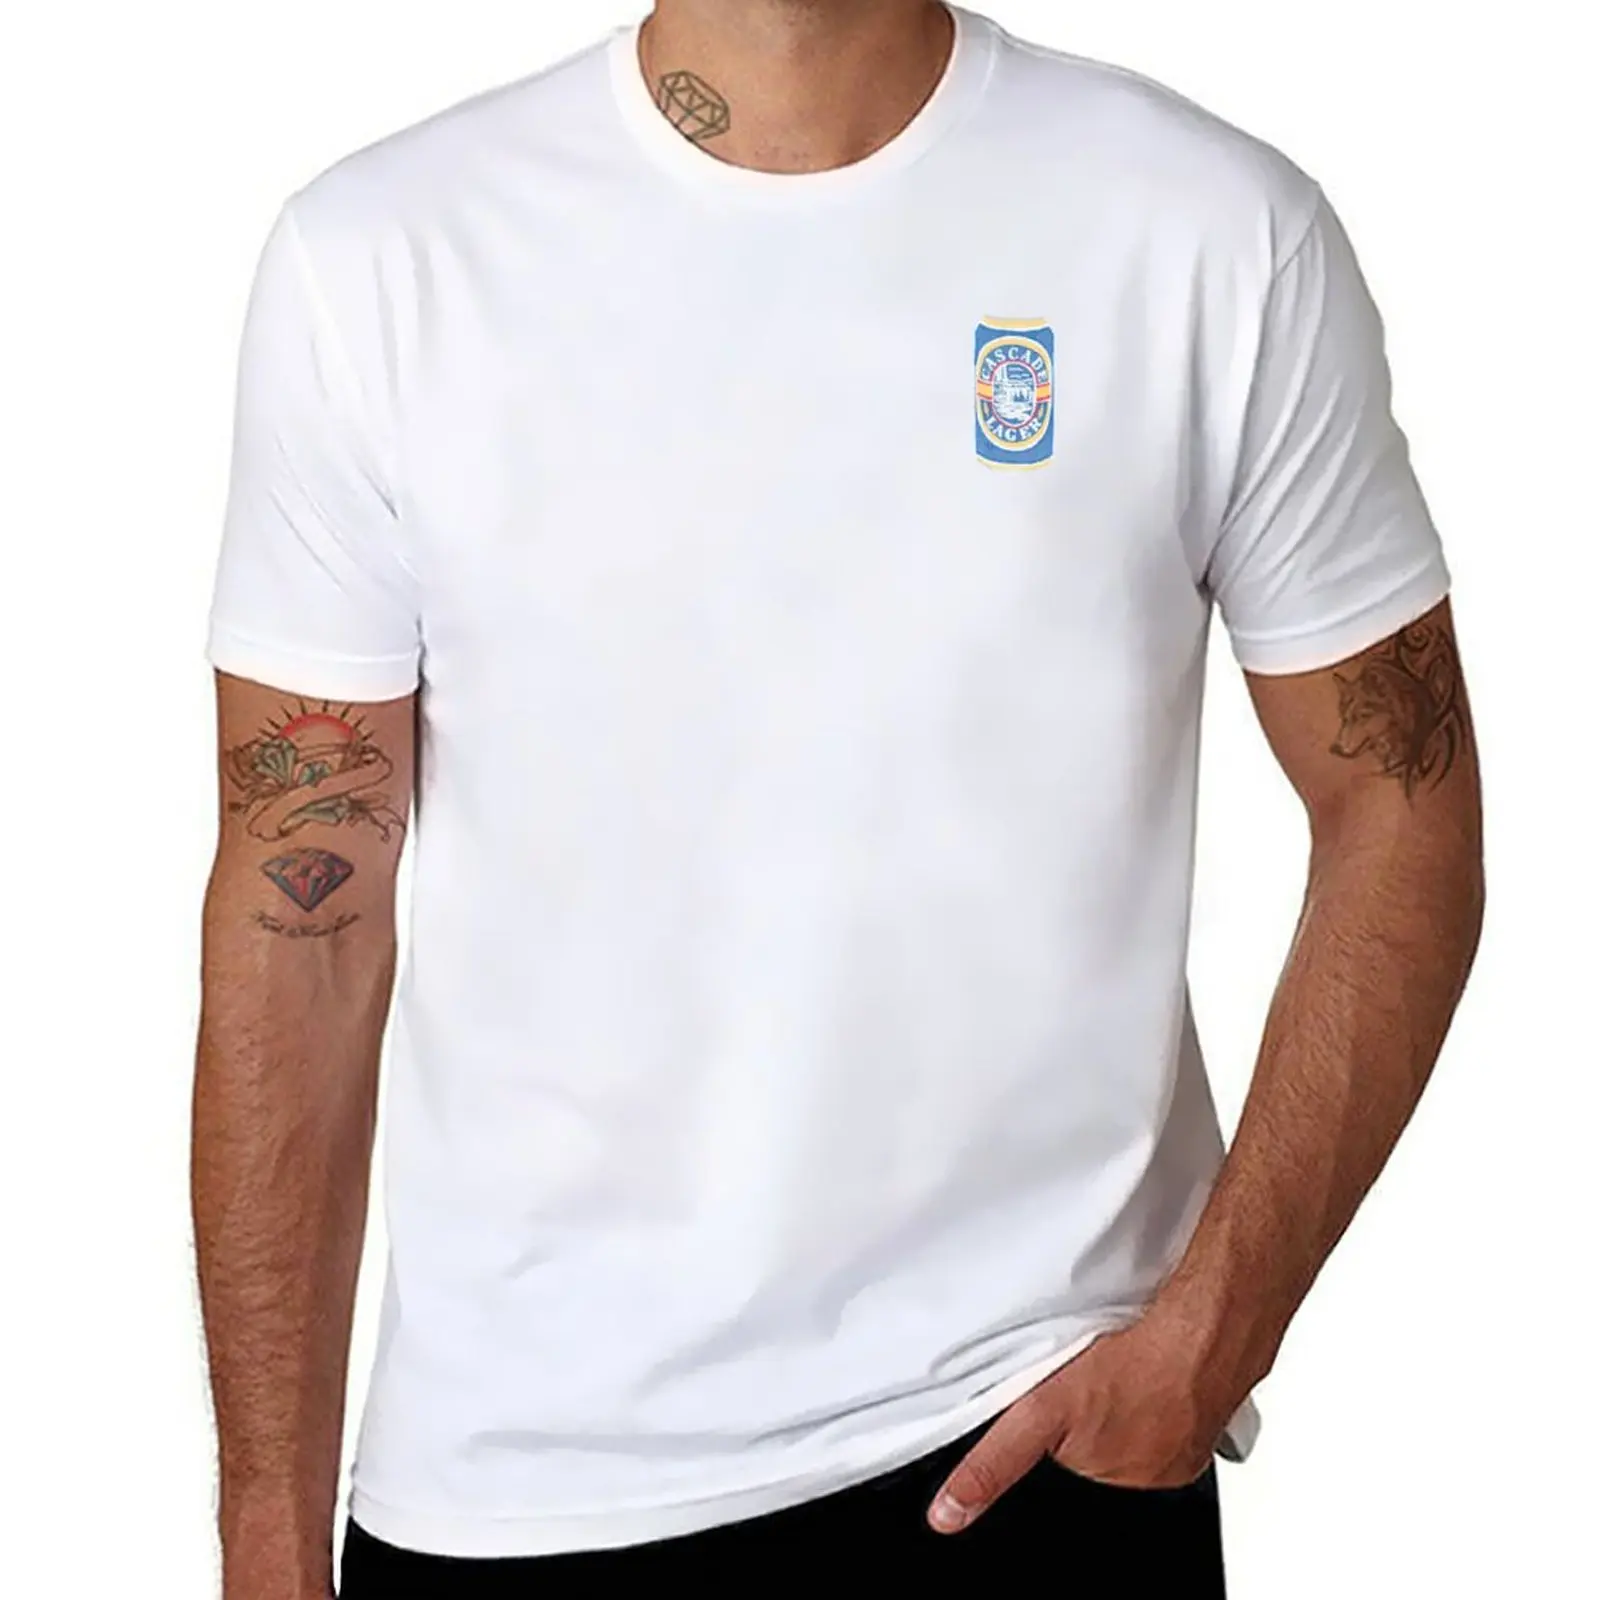 Новая футболка Cascade большего размера, изготовленные на заказ футболки, быстросохнущая рубашка, пустые футболки, изготовленные на заказ футболки, создайте свою собственную мужскую тренировочную рубашку